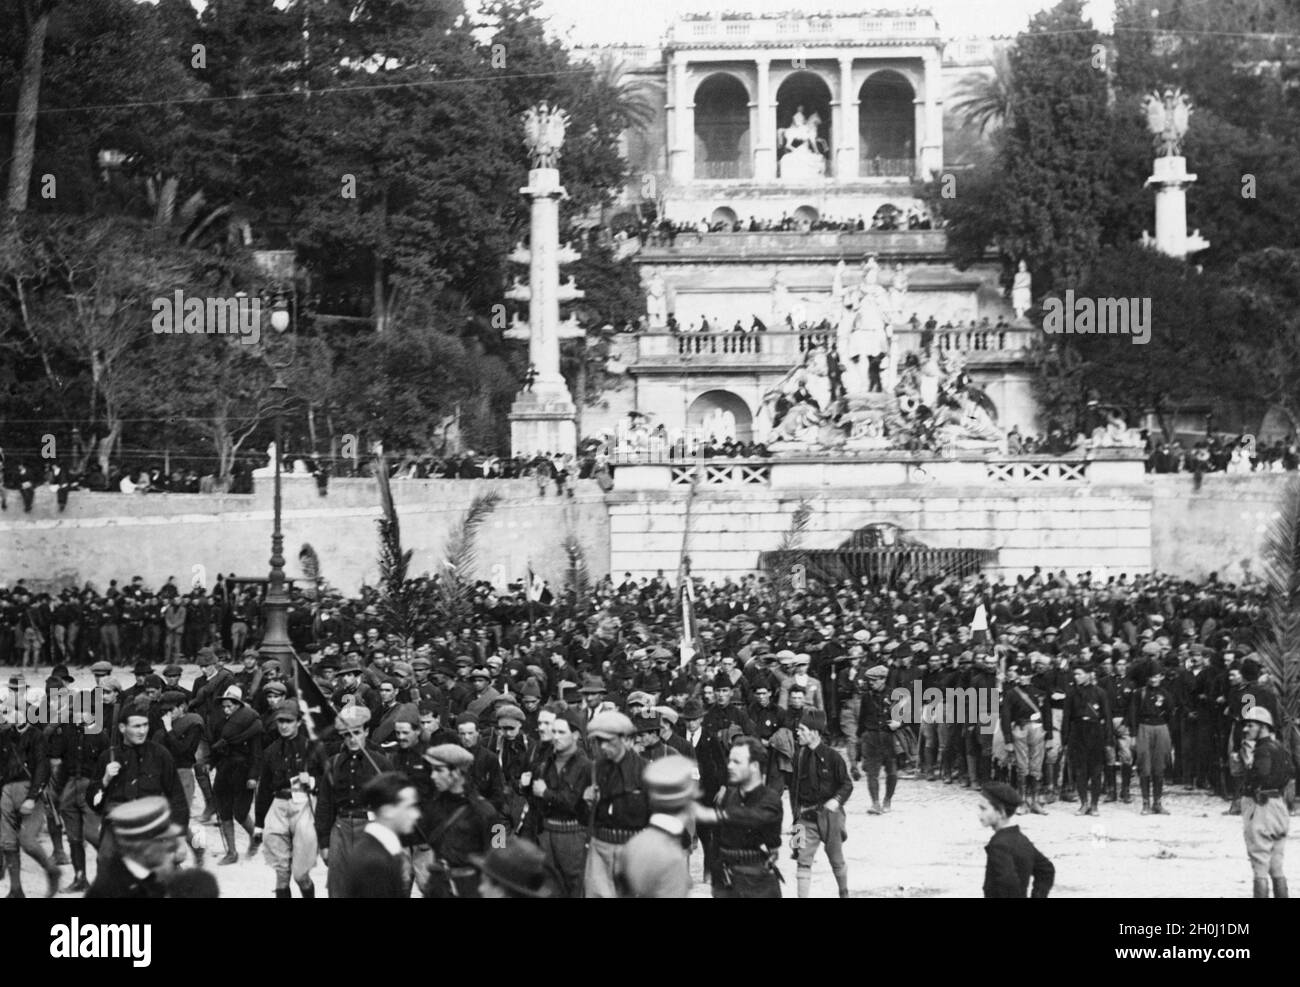 Die 'Faschisten' ''Marsch auf Rom'' wurde am 31. Oktober 1922 von einer Parade und einer Siegesfeier in der Stadt gekrönt. Auf dem Bild feiern die Blackshirts auf der Piazza del Popolo vor der Fontana della Dea Roma. Im Hintergrund, über dem Reiterdenkmal, befindet sich die Terrazza del Pincio. [Automatisierte Übersetzung]' Stockfoto